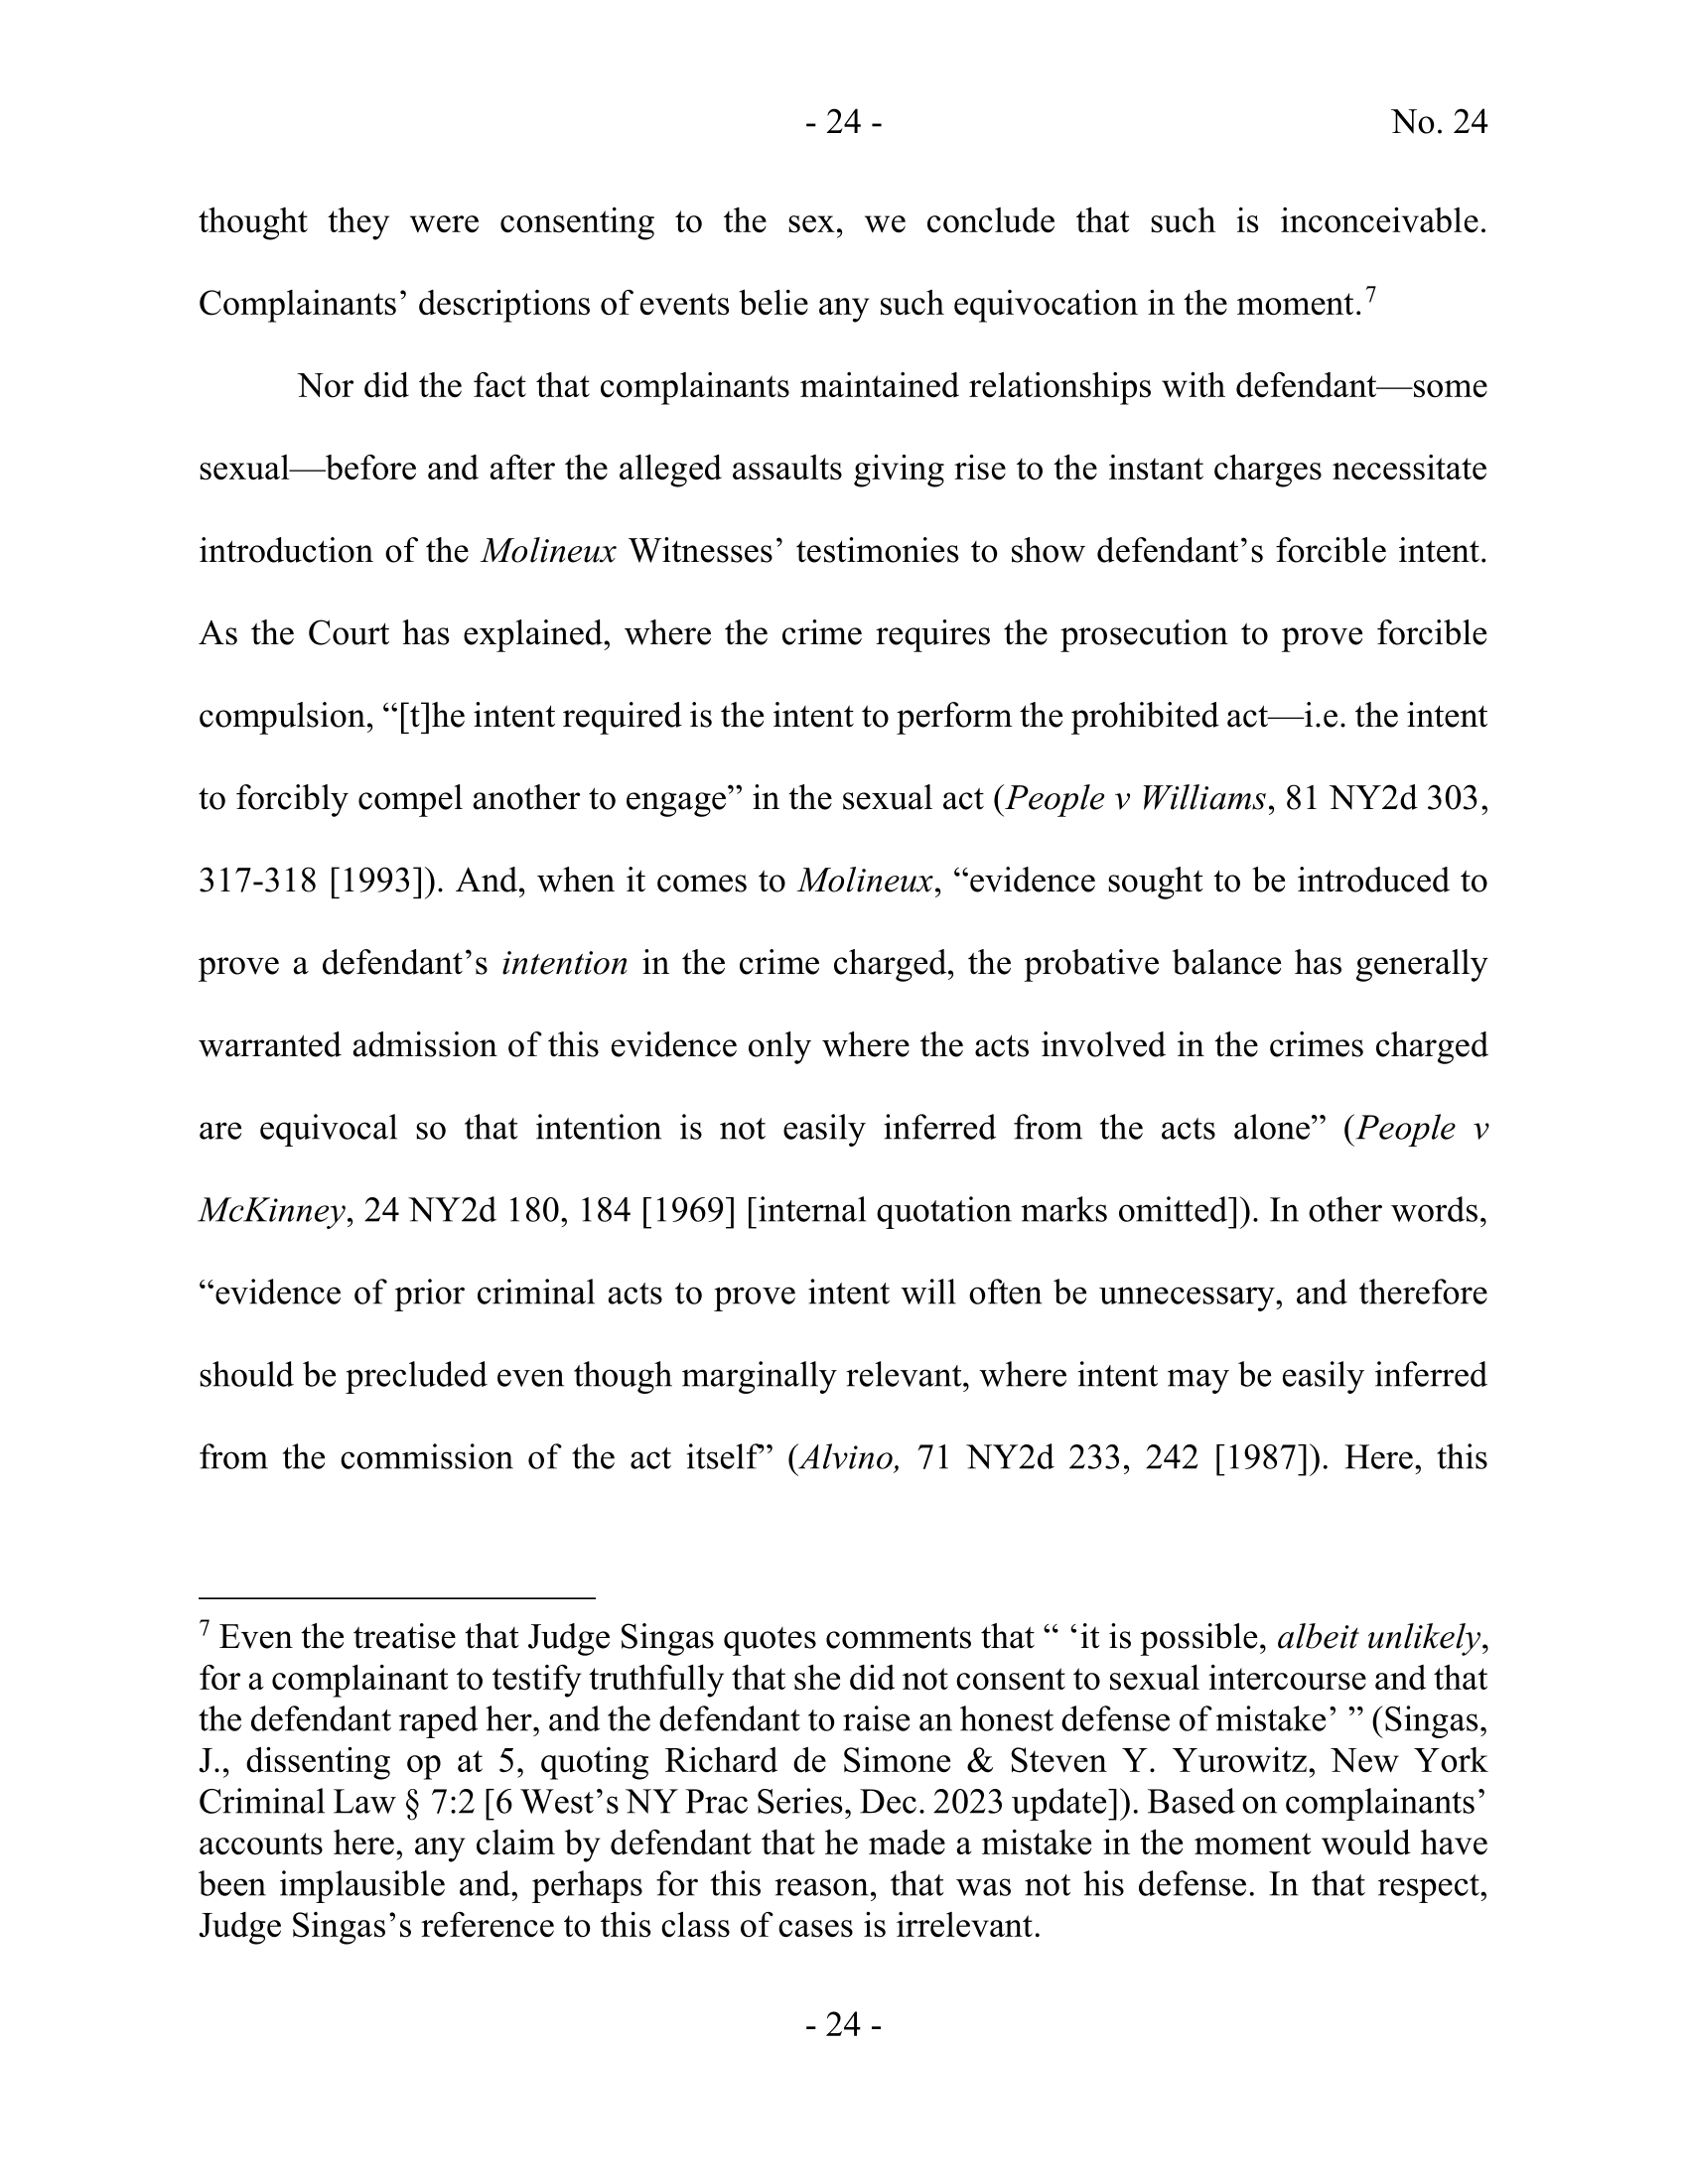 Seite 24 eines undefinierten PDF-Dokuments.